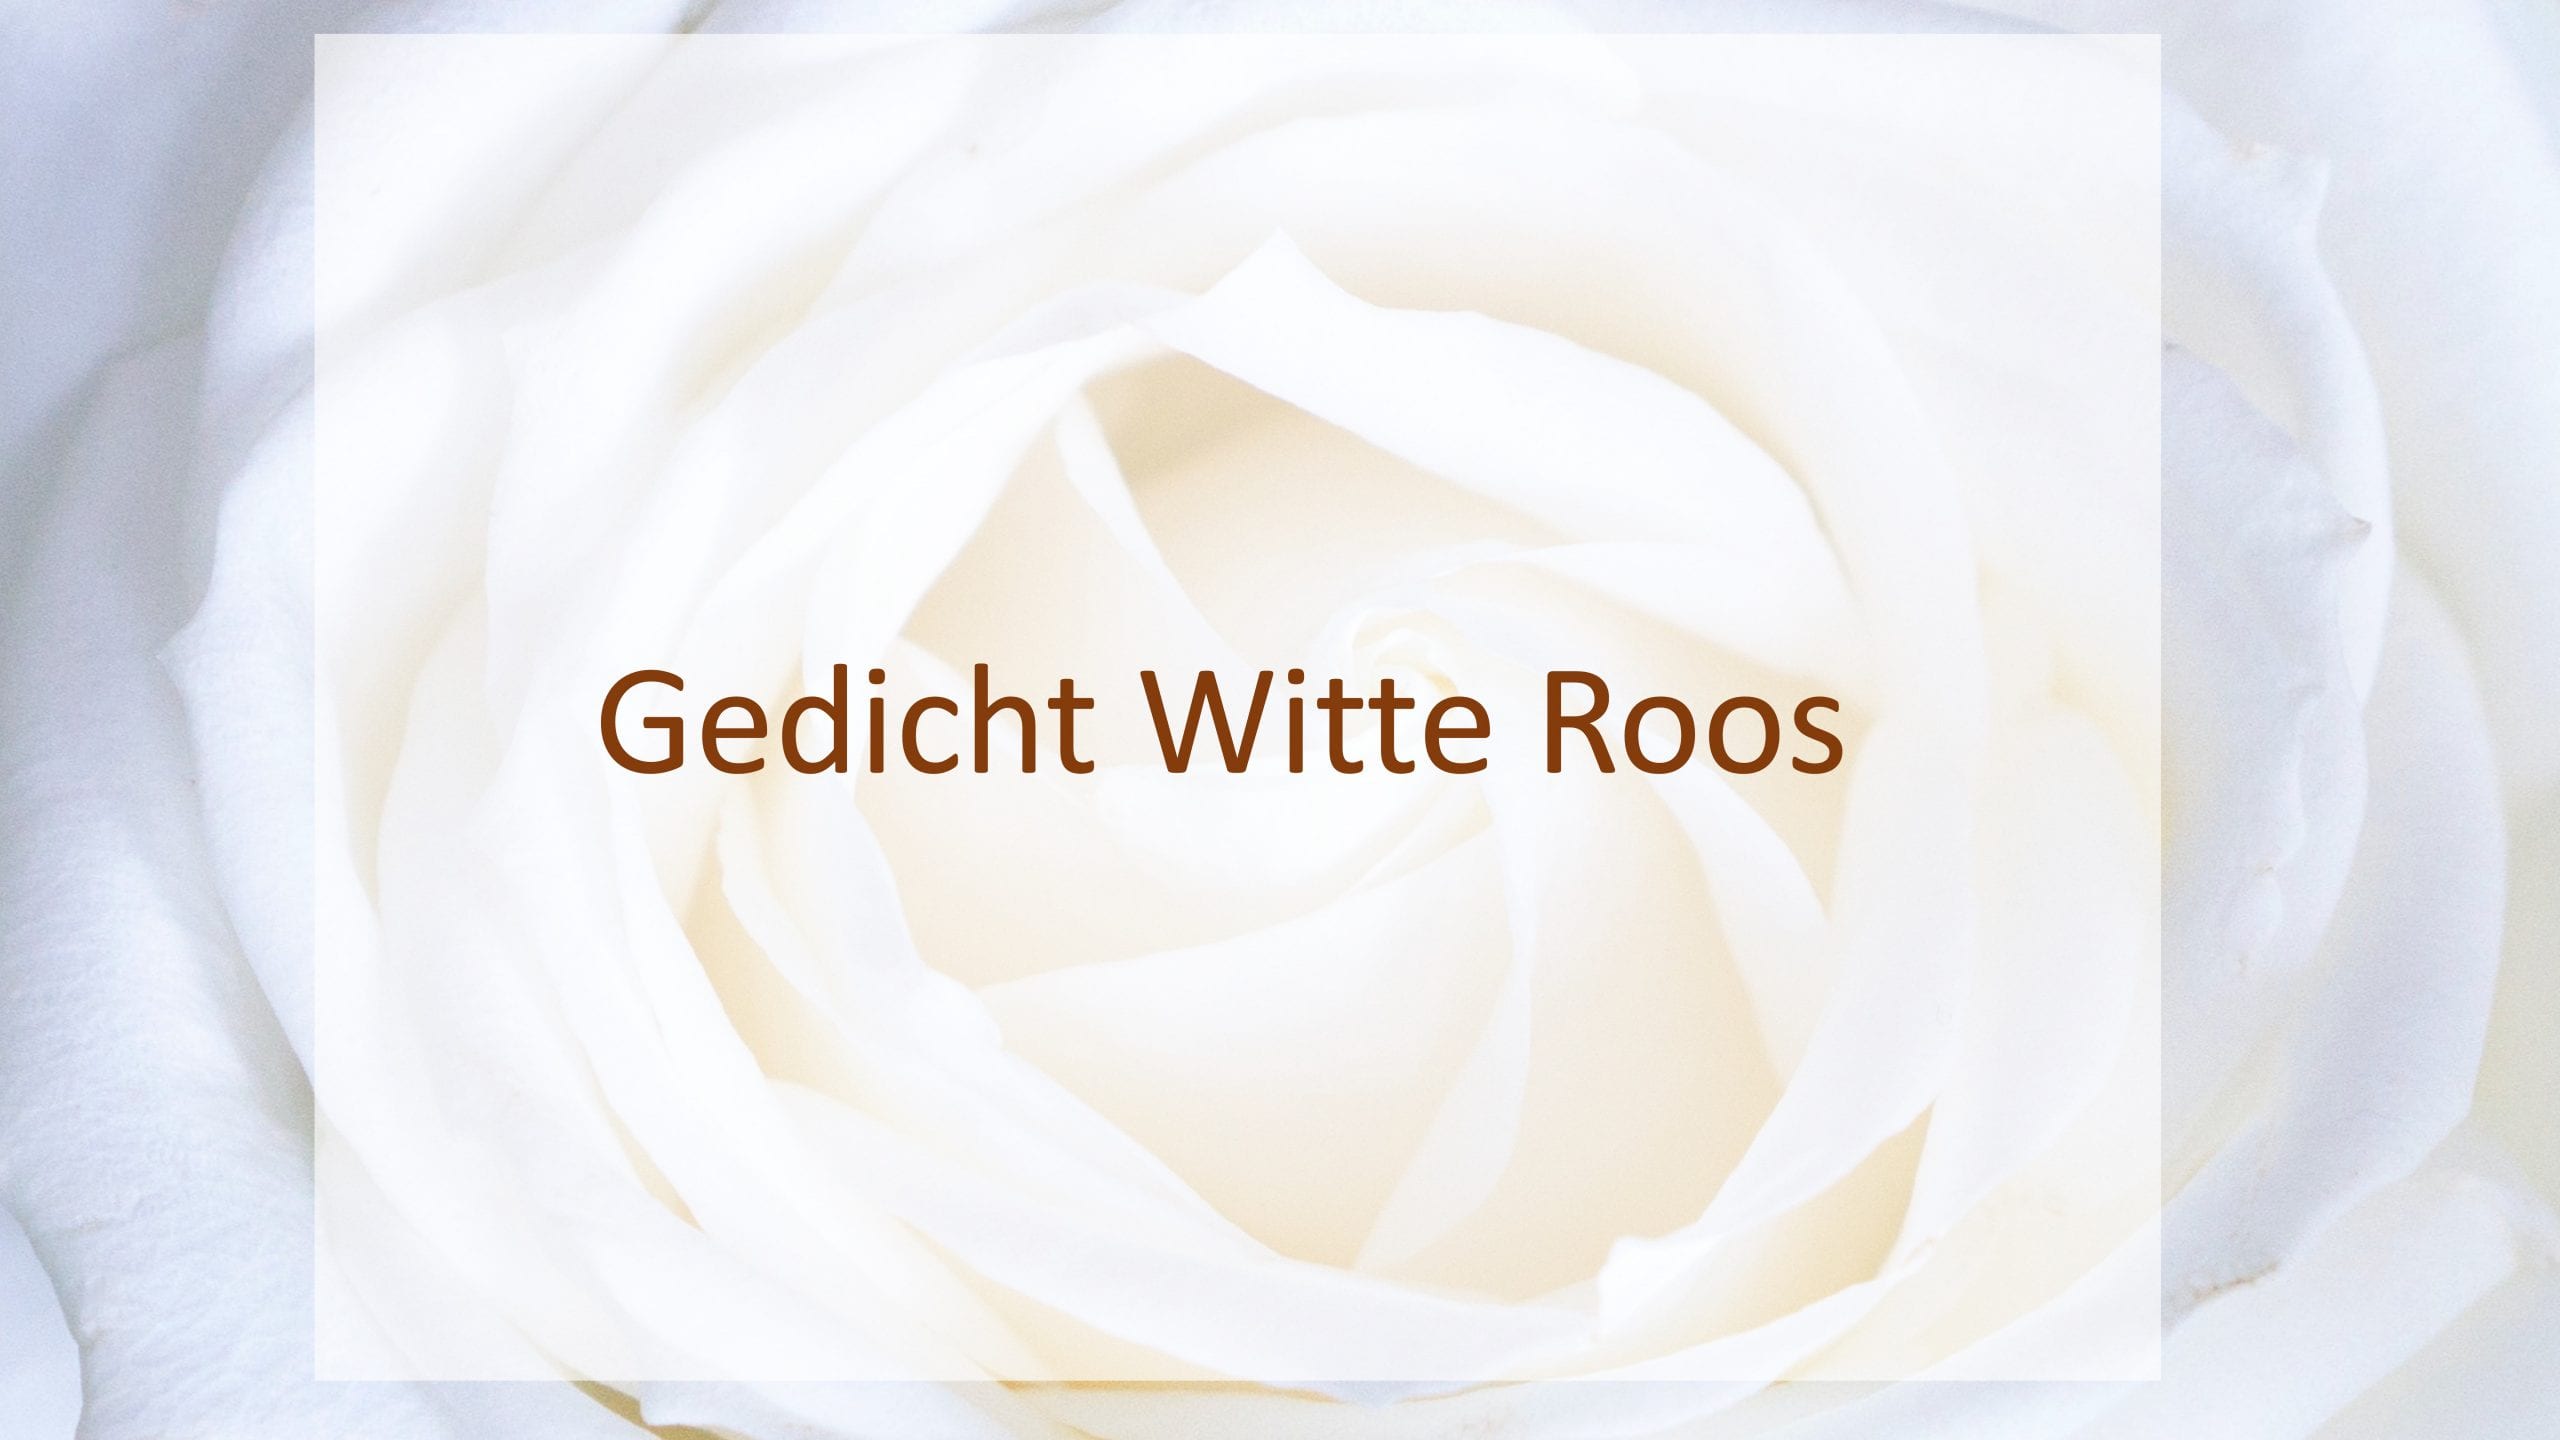 gedicht witte roos titel